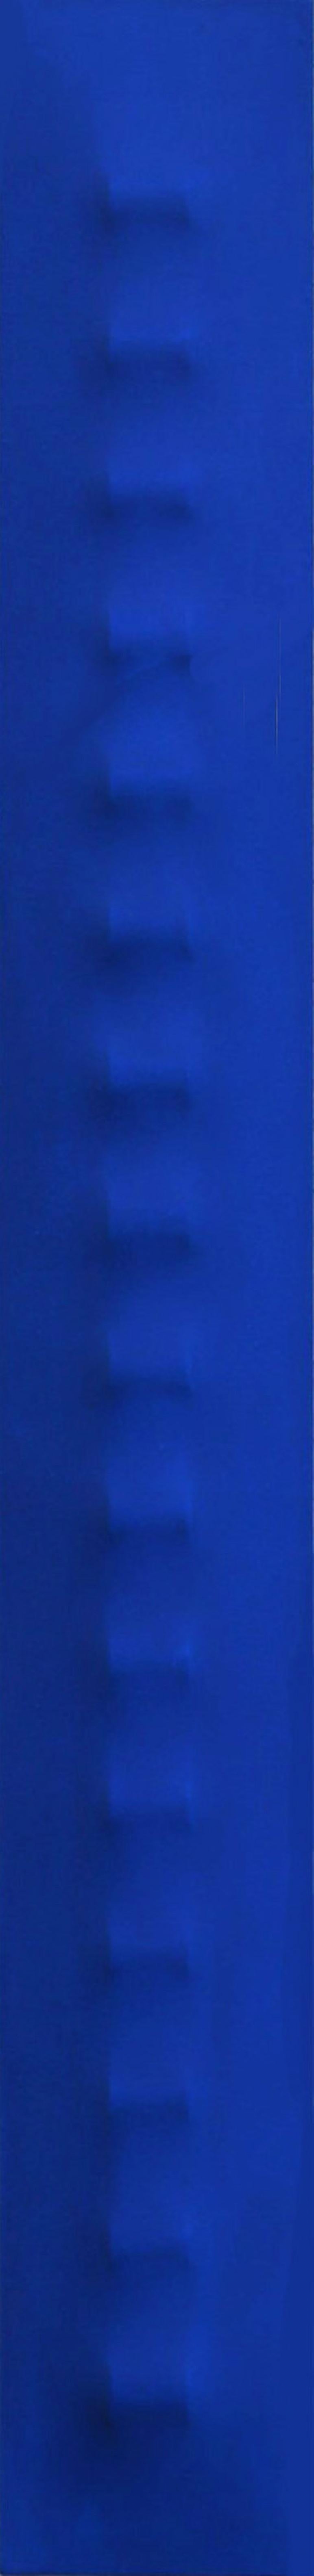 Slims CNB – Dreidimensionales, minimalistisches, abstraktes Wandgemälde in Blau